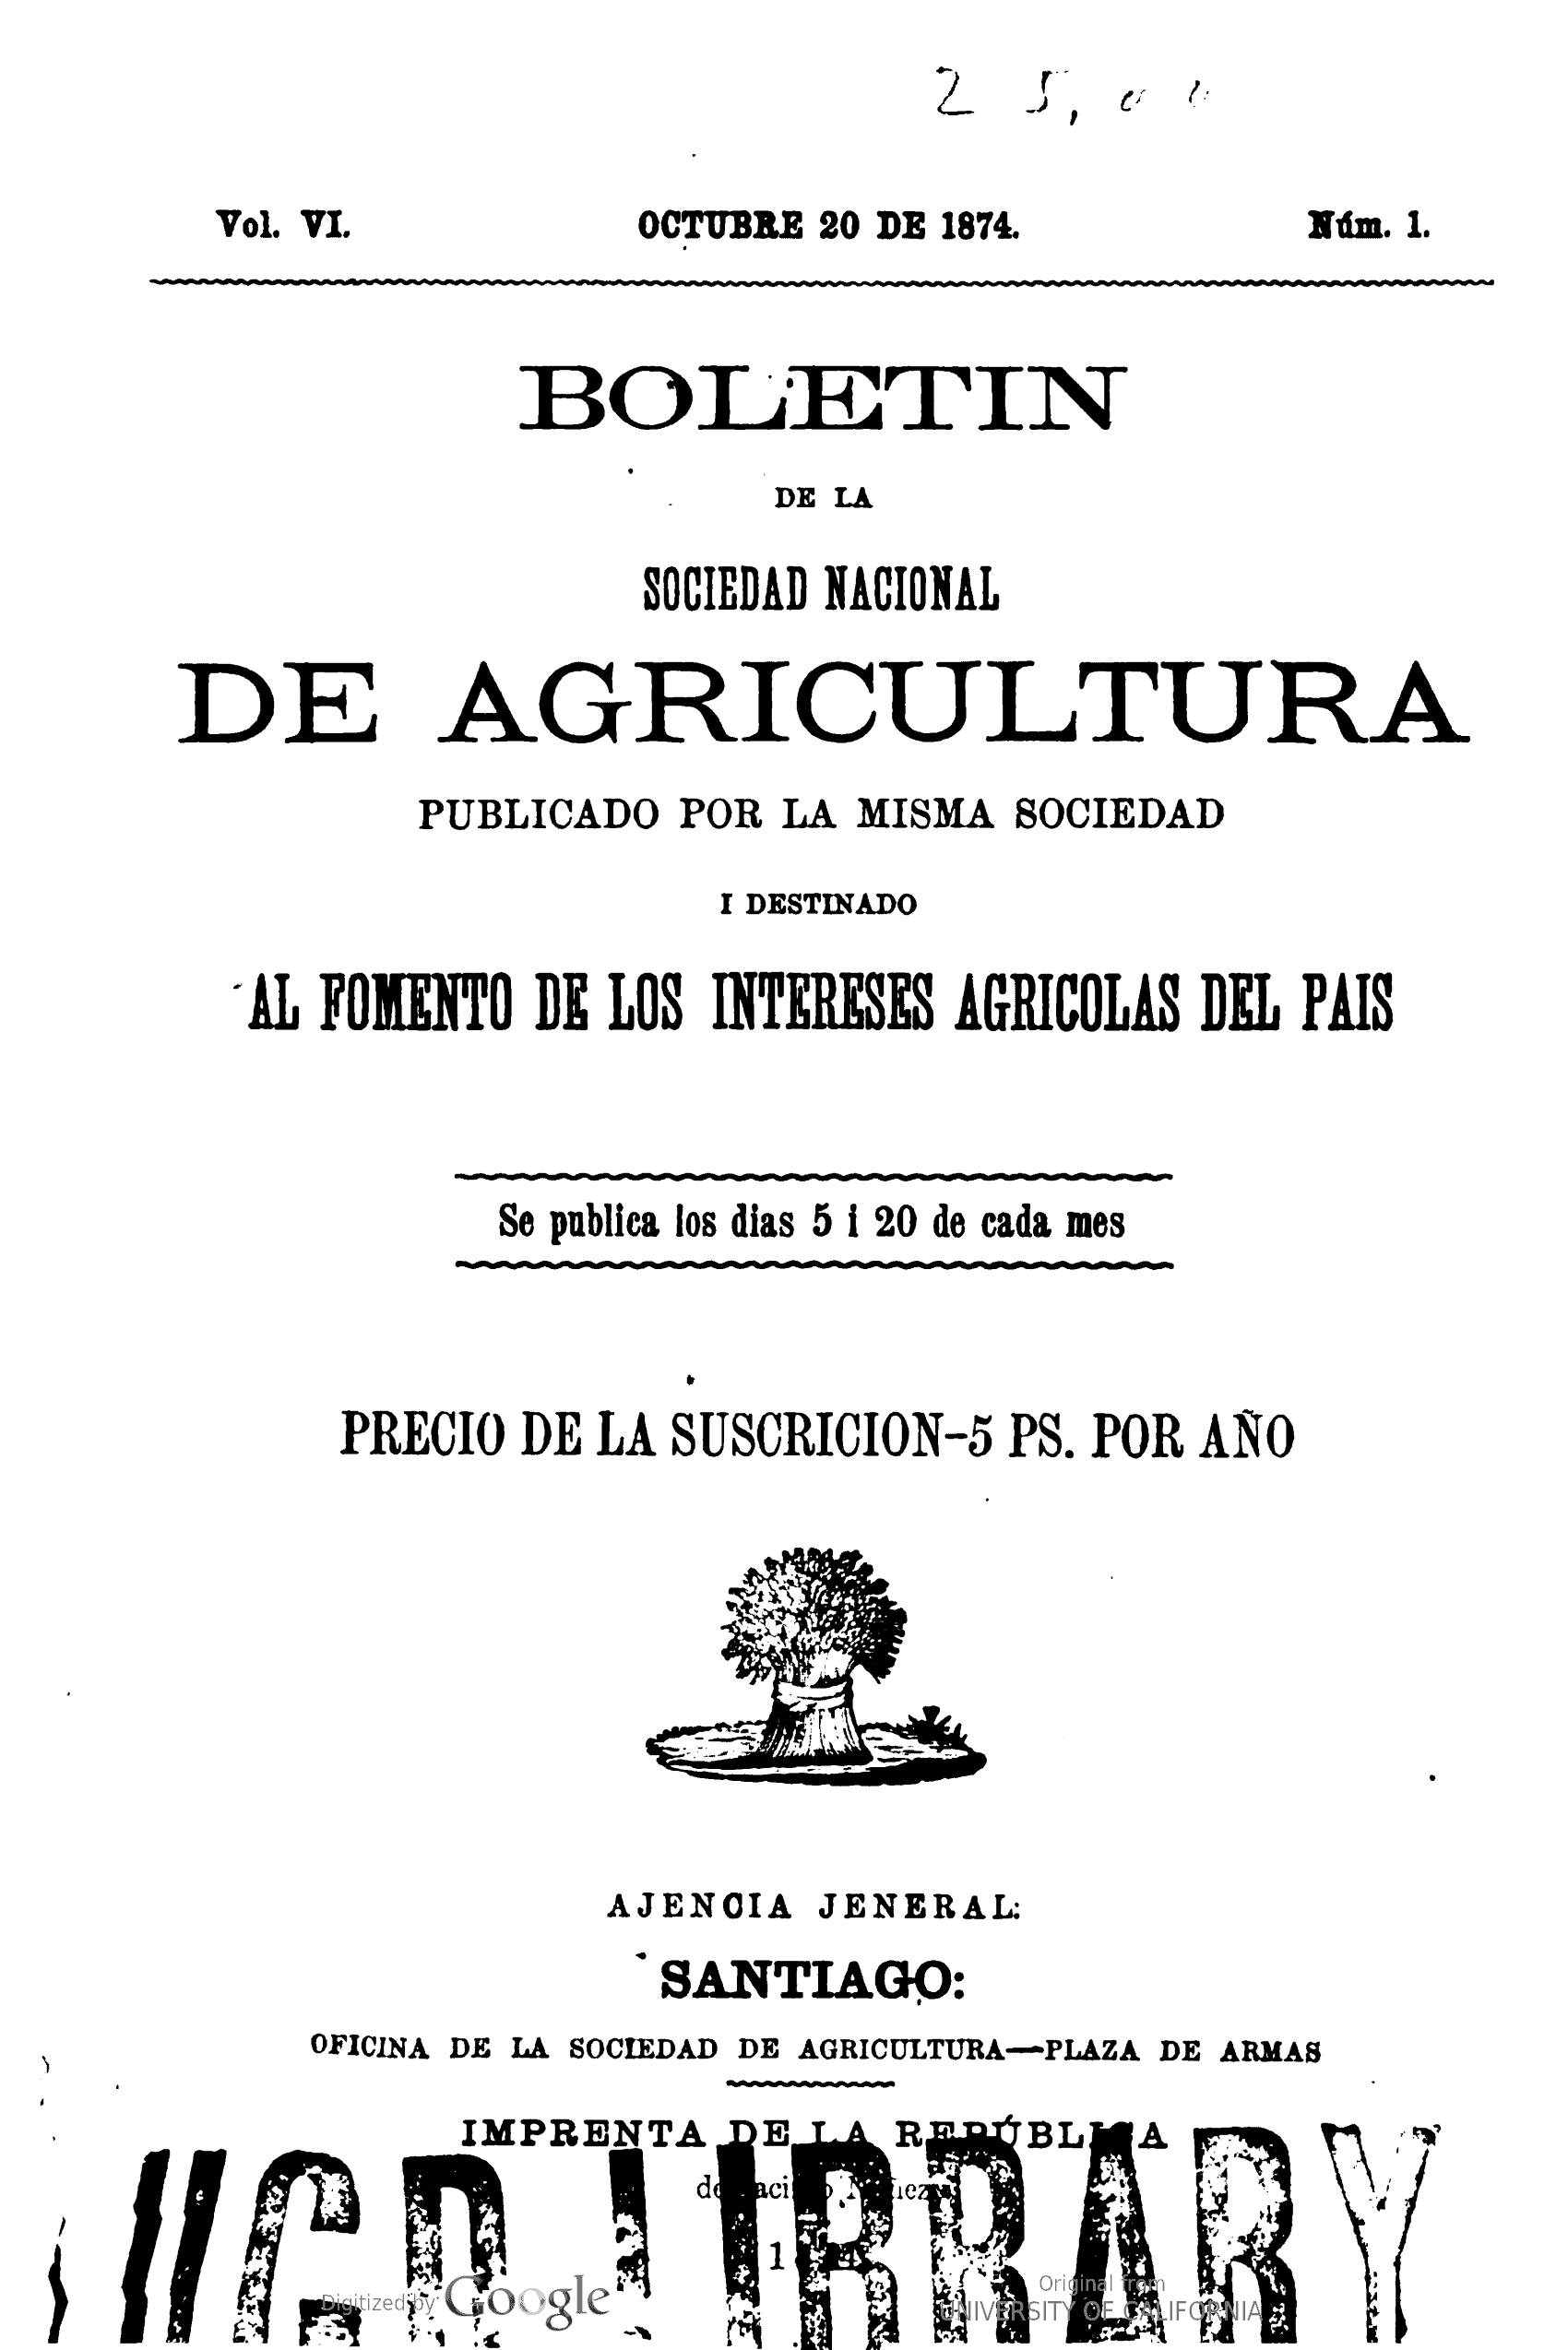 Boletín de la Sociedad Nacional de Agricultura…destinado al Fomento de los intereses agrícolas del país..